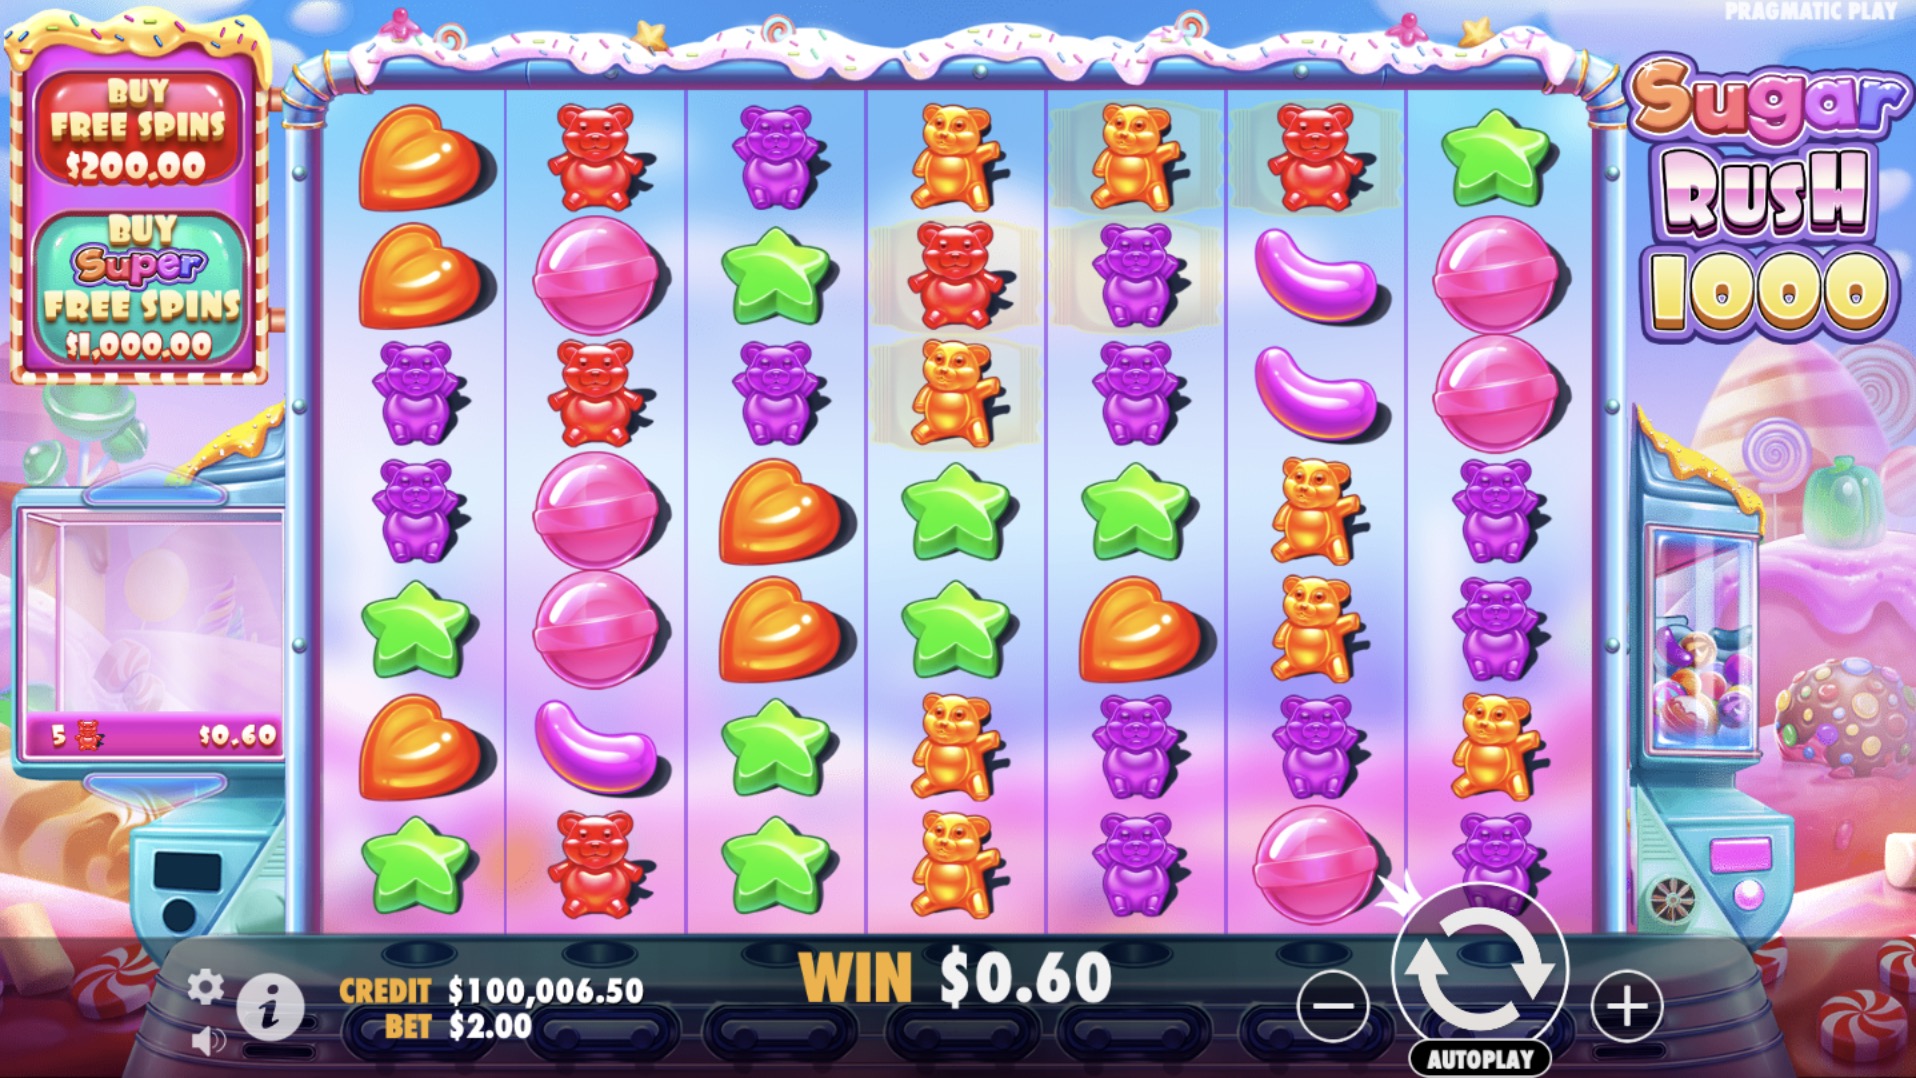 Мир сладостей подарят слоты «Sugar Rush 1000» от Pragmatic Play и казино Максслотс